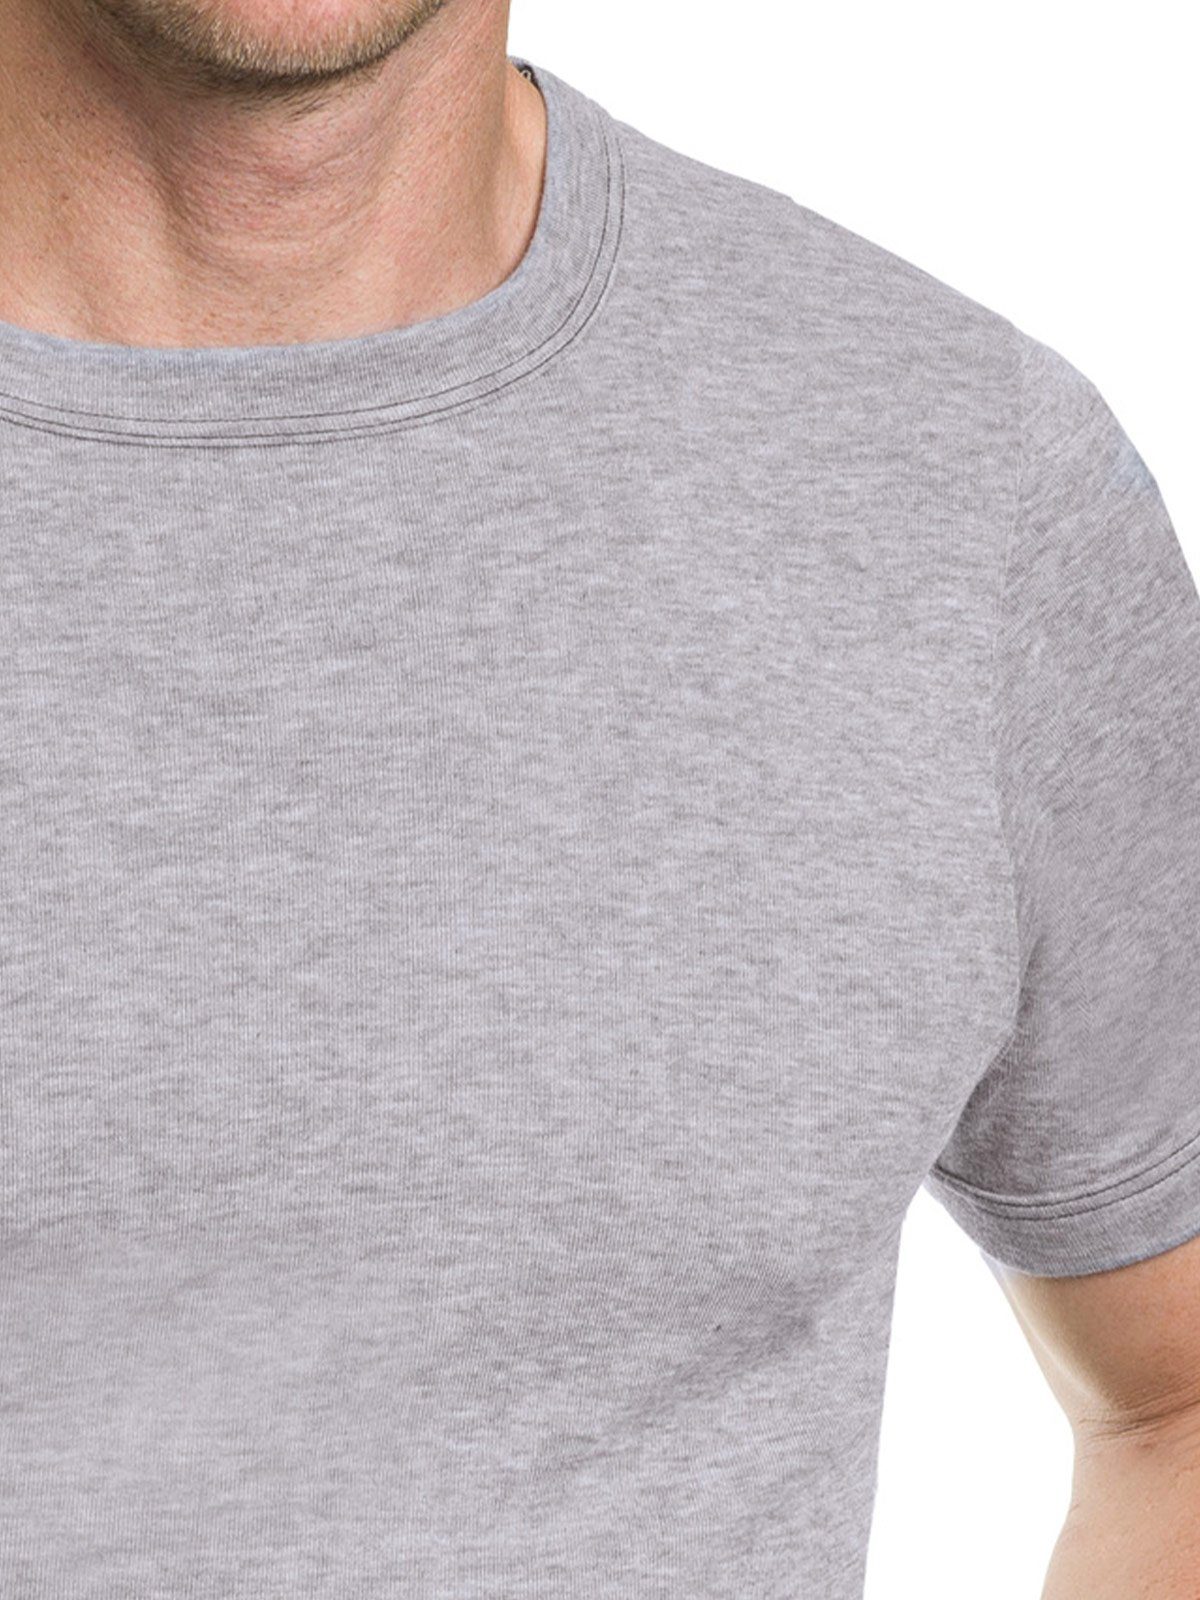 KUMPF Unterziehshirt Herren T-Shirt 1/2 Arm Trevira Perform (Stück, 1-St)  hohe Markenqualität